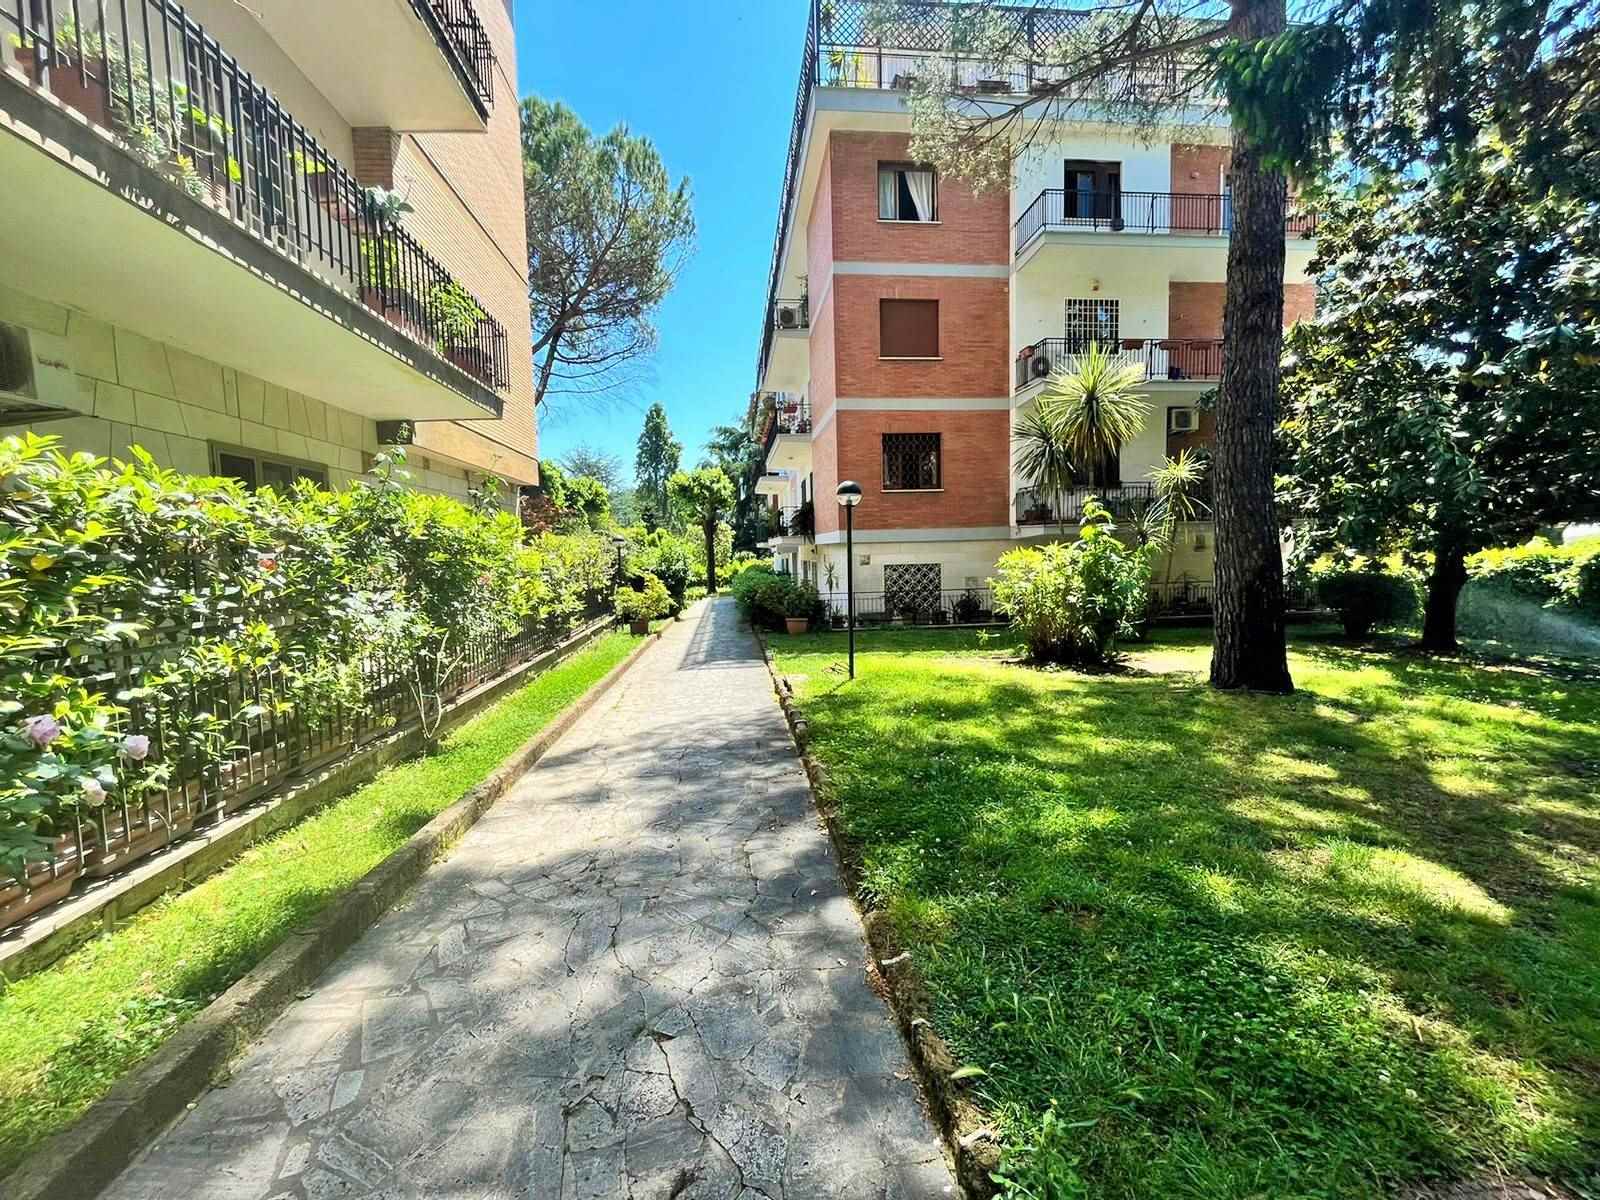 Appartamento in vendita a Roma, 6 locali, zona Zona: 31 . Giustiniana, Tomba di Nerone, Cassia, prezzo € 490.000 | CambioCasa.it